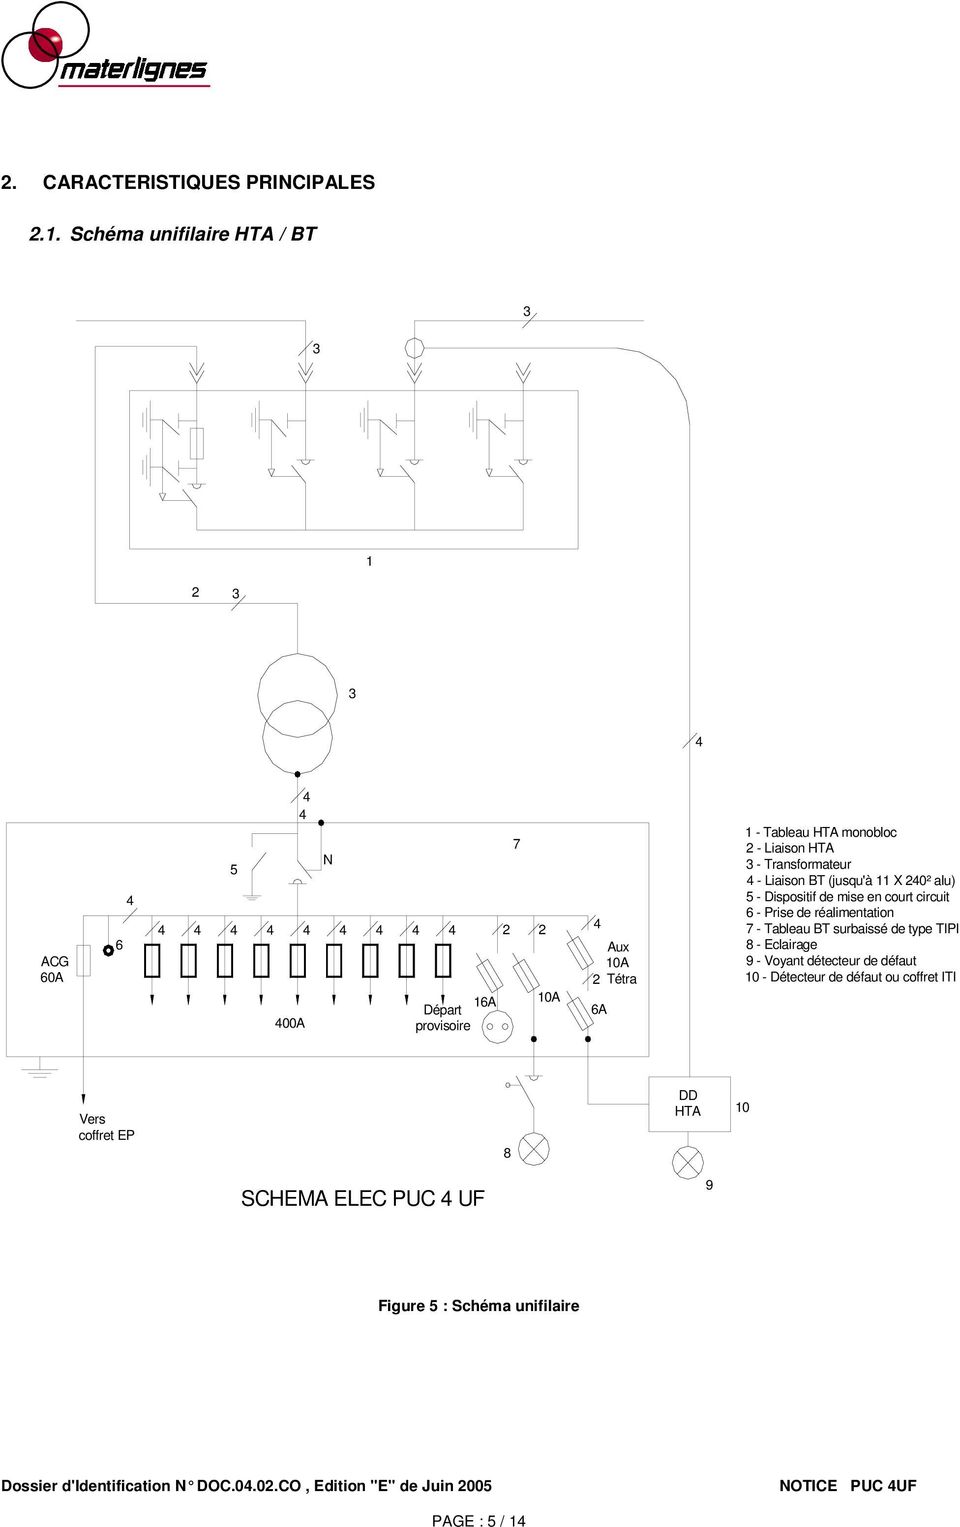 - Tableau HTA monobloc 2 - Liaison HTA 3 - Transformateur 4 - Liaison BT (jusqu'à 11 X 240² alu) 5 - Dispositif de mise en court circuit 6